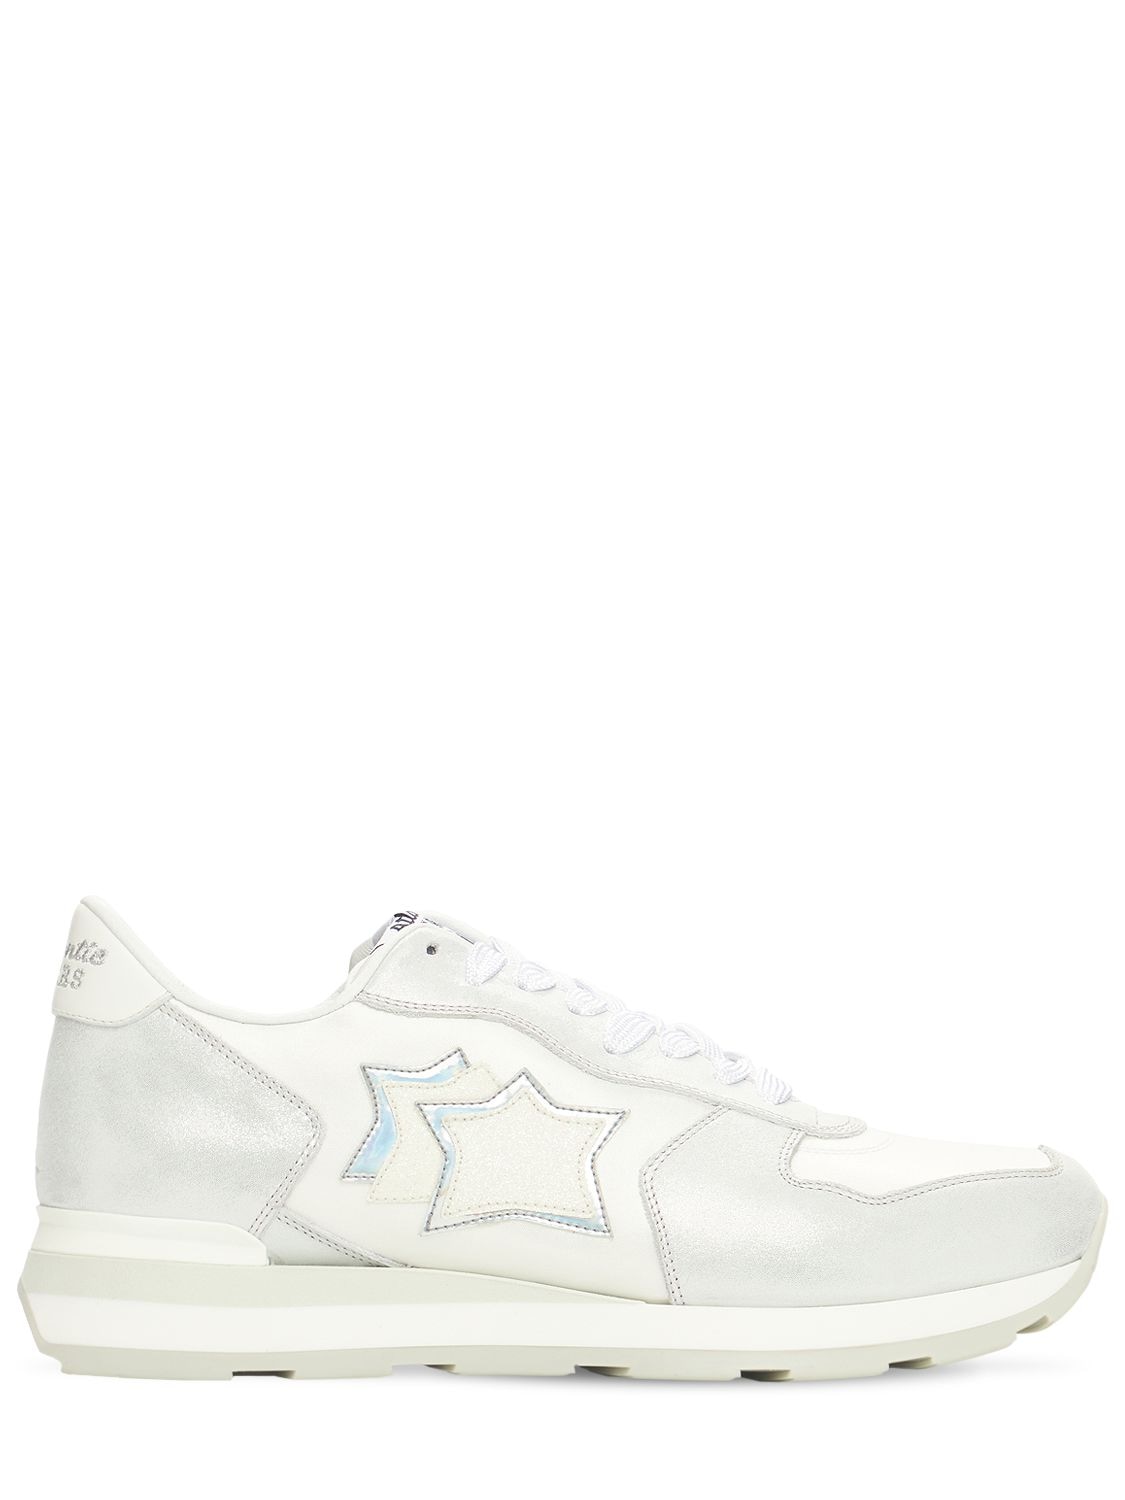 Atlantic Stars "vega"麂皮&尼龙运动鞋 In White